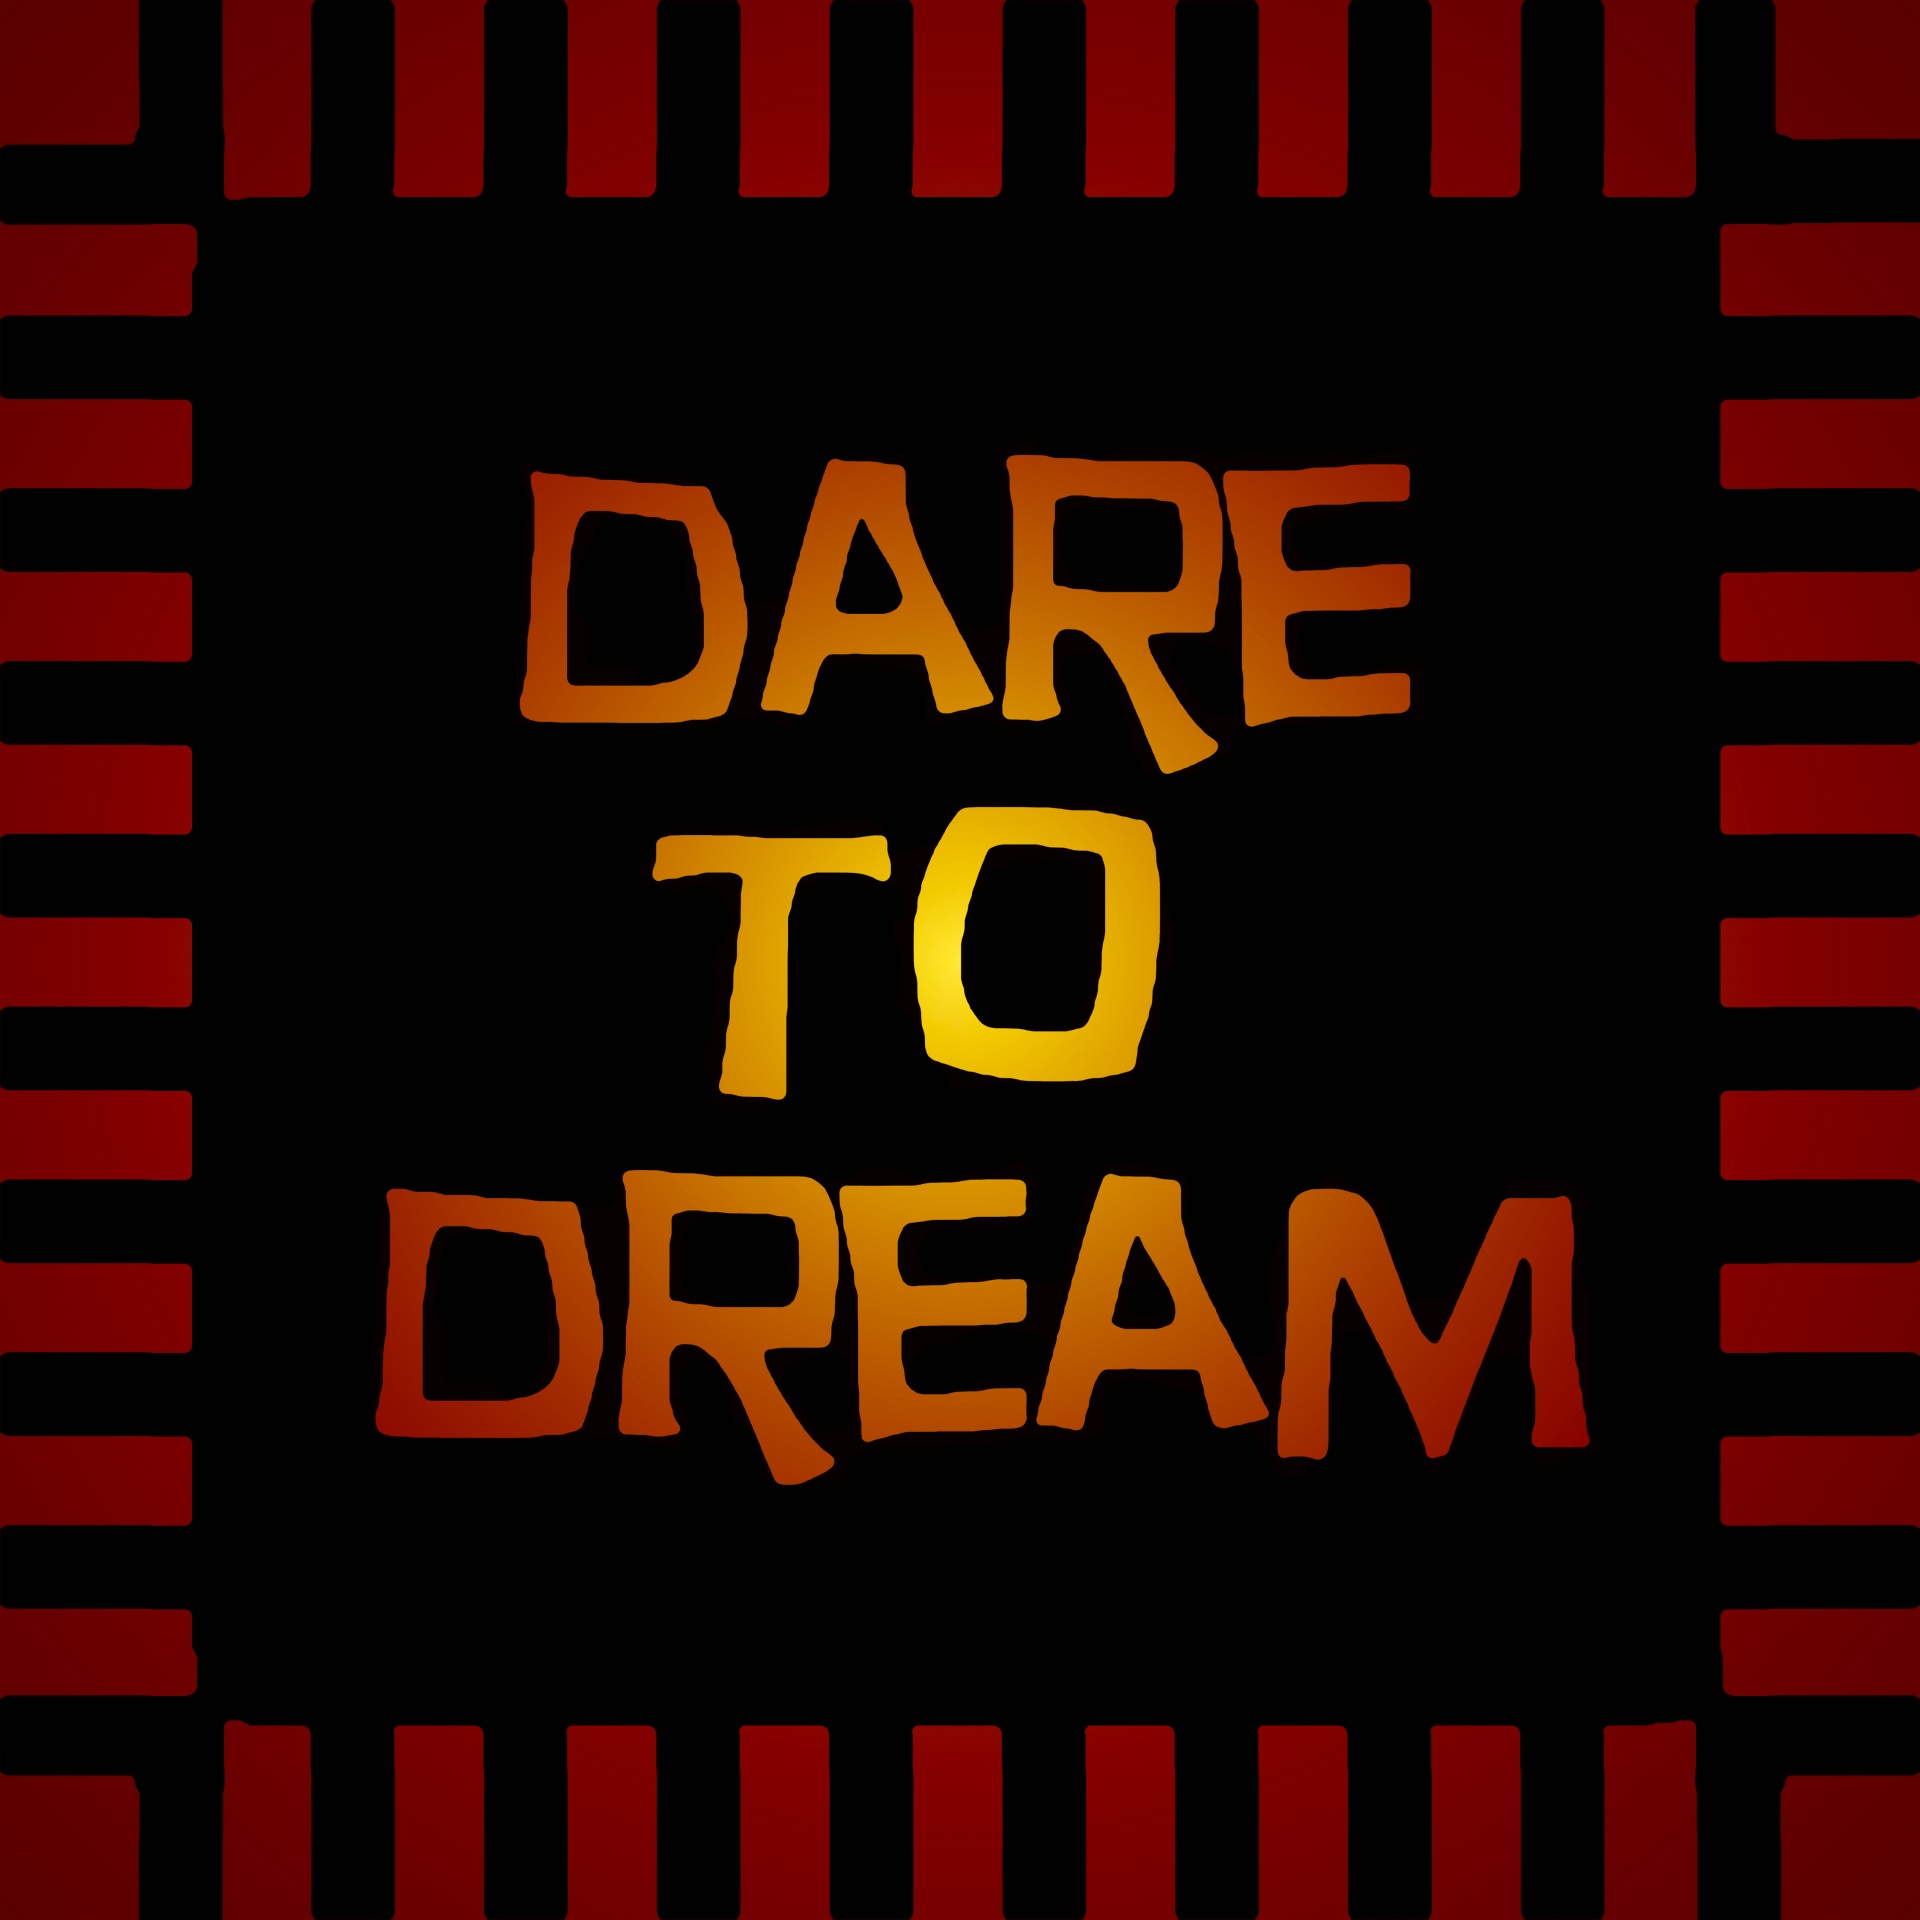 dare to dream dreamtime gold free photo